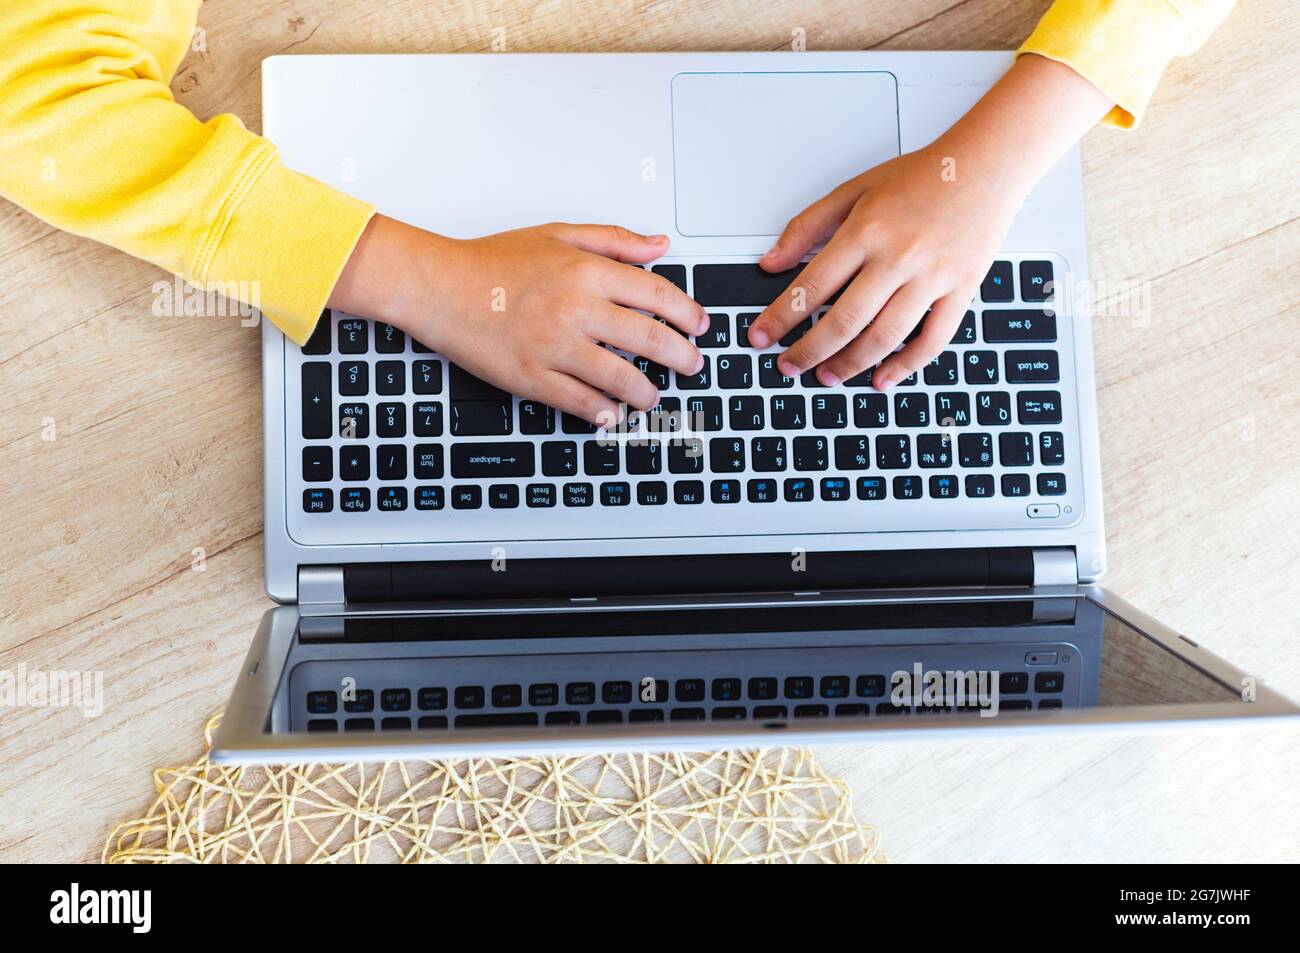 Les mains des enfants avec des manches jaunes sur un clavier d'ordinateur portable sur une table en bois clair, vue du dessus. Retour à l'école, homeschooling, e-learning. Social Banque D'Images